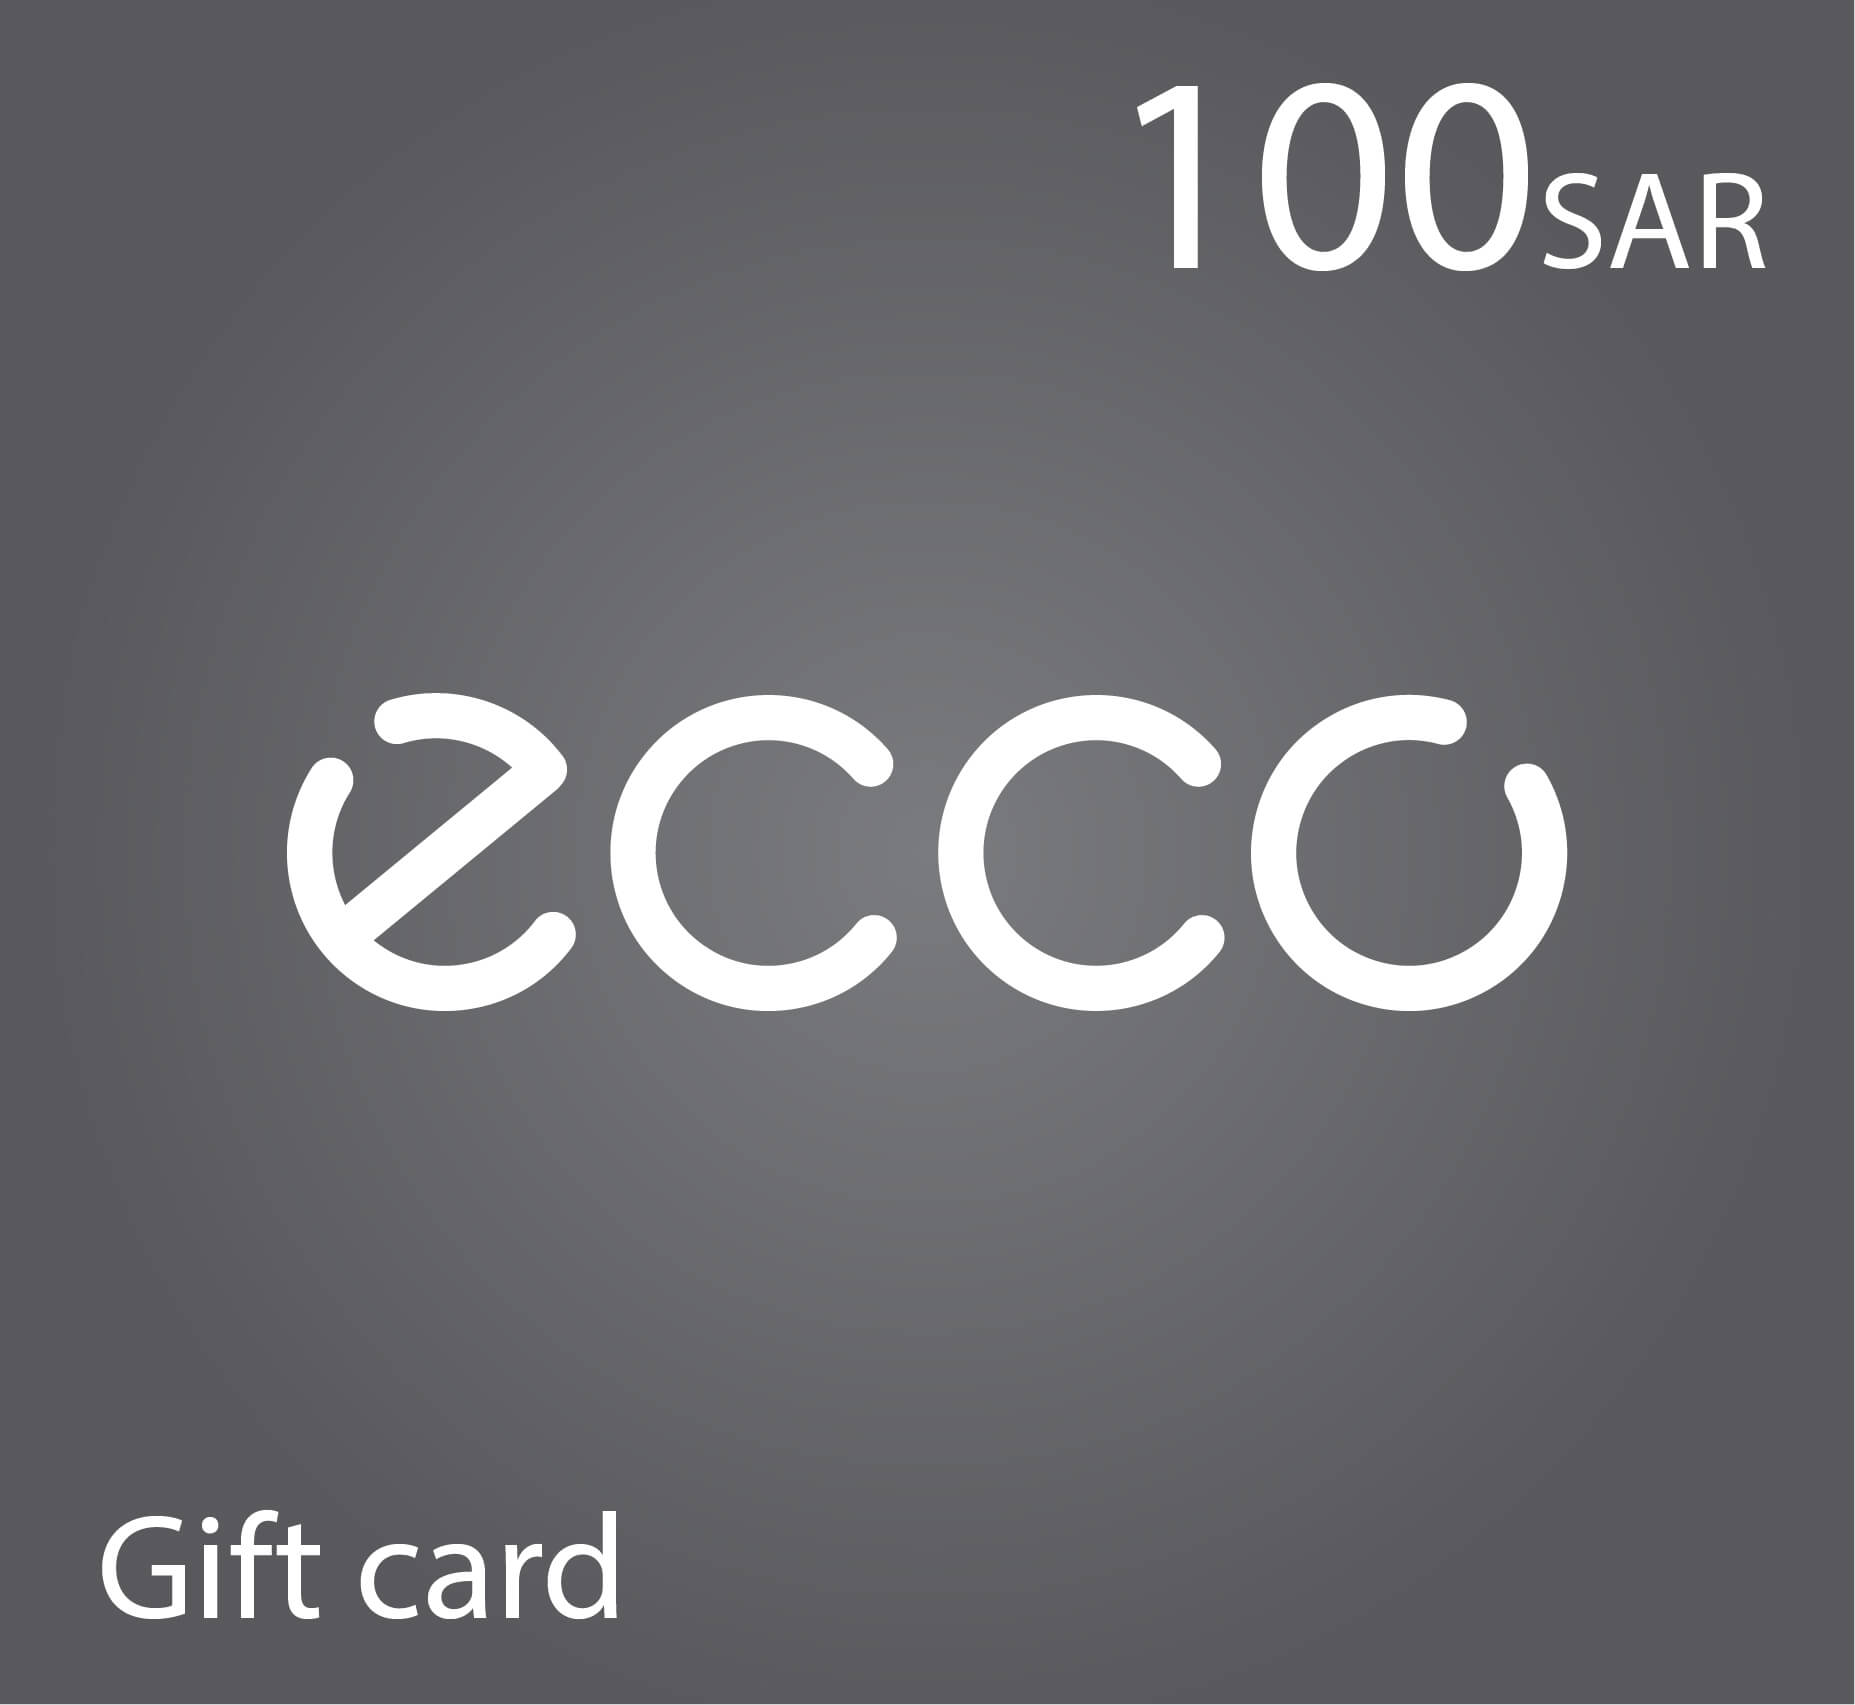 بطاقة هدايا إيكو Ecco - قسيمة شراء ايكو - 100 ريال